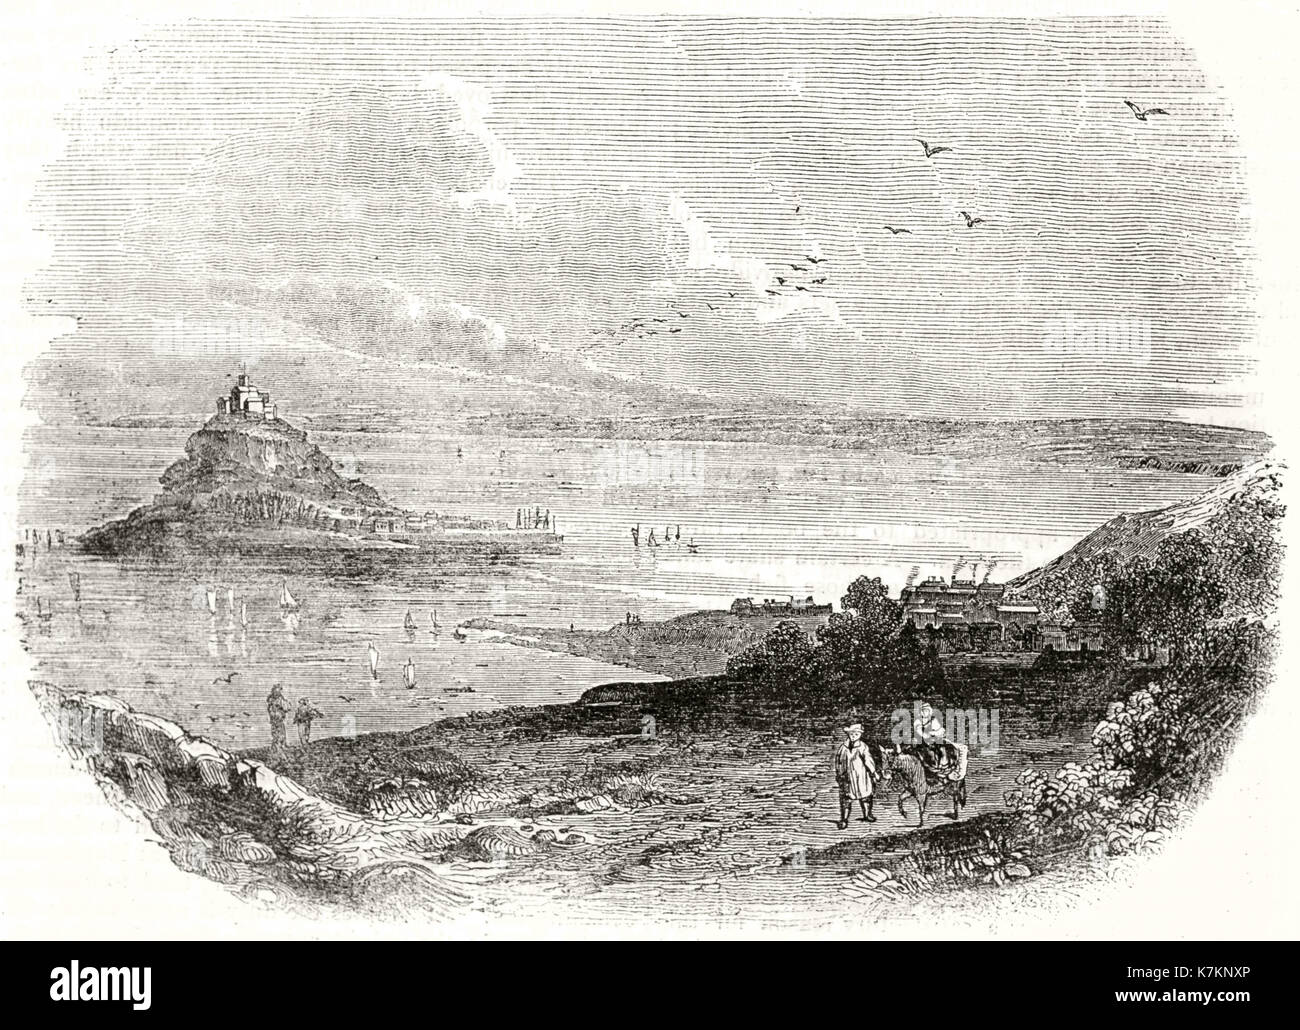 Vista anterior de Mount's Bay, Cornwall, Reino Unido. Por autor no identificado, Publ. de la Penny Magazine, Londres, 1837 Foto de stock